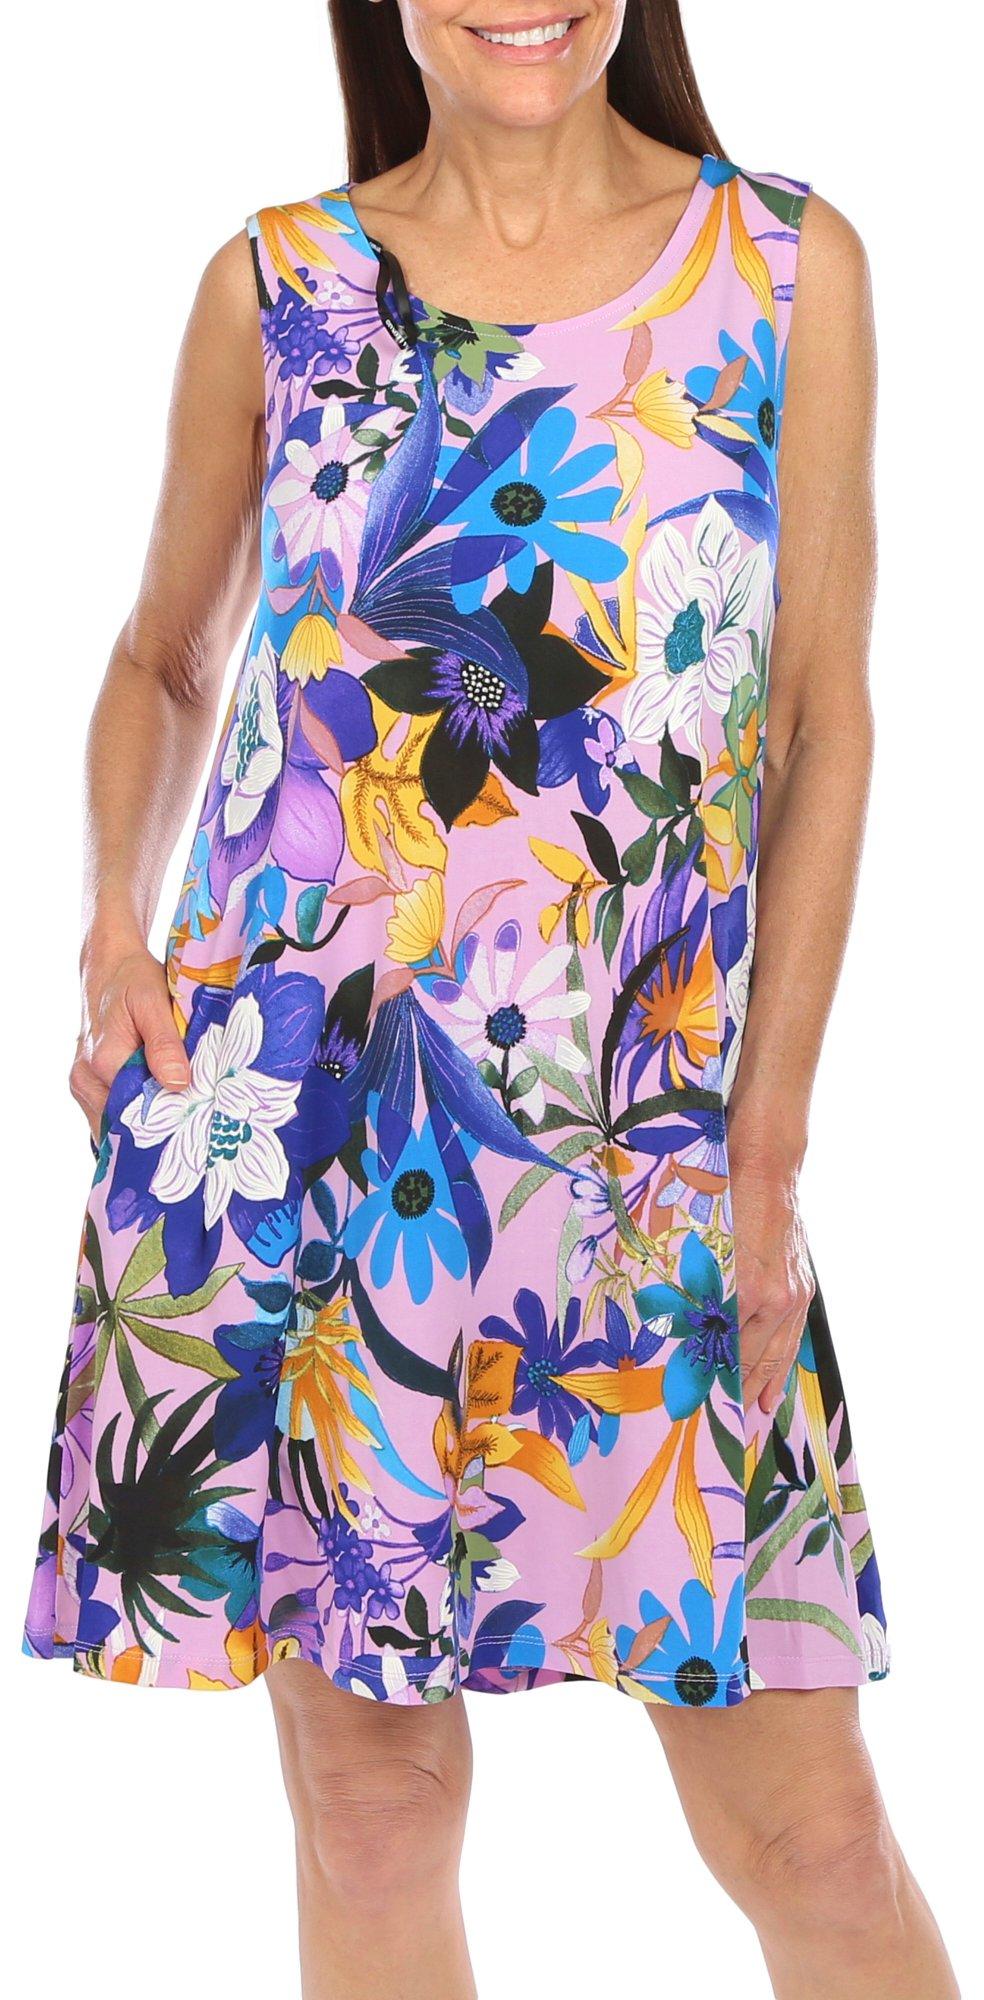 Nina Leonard Womens Fun Floral Sun Dress